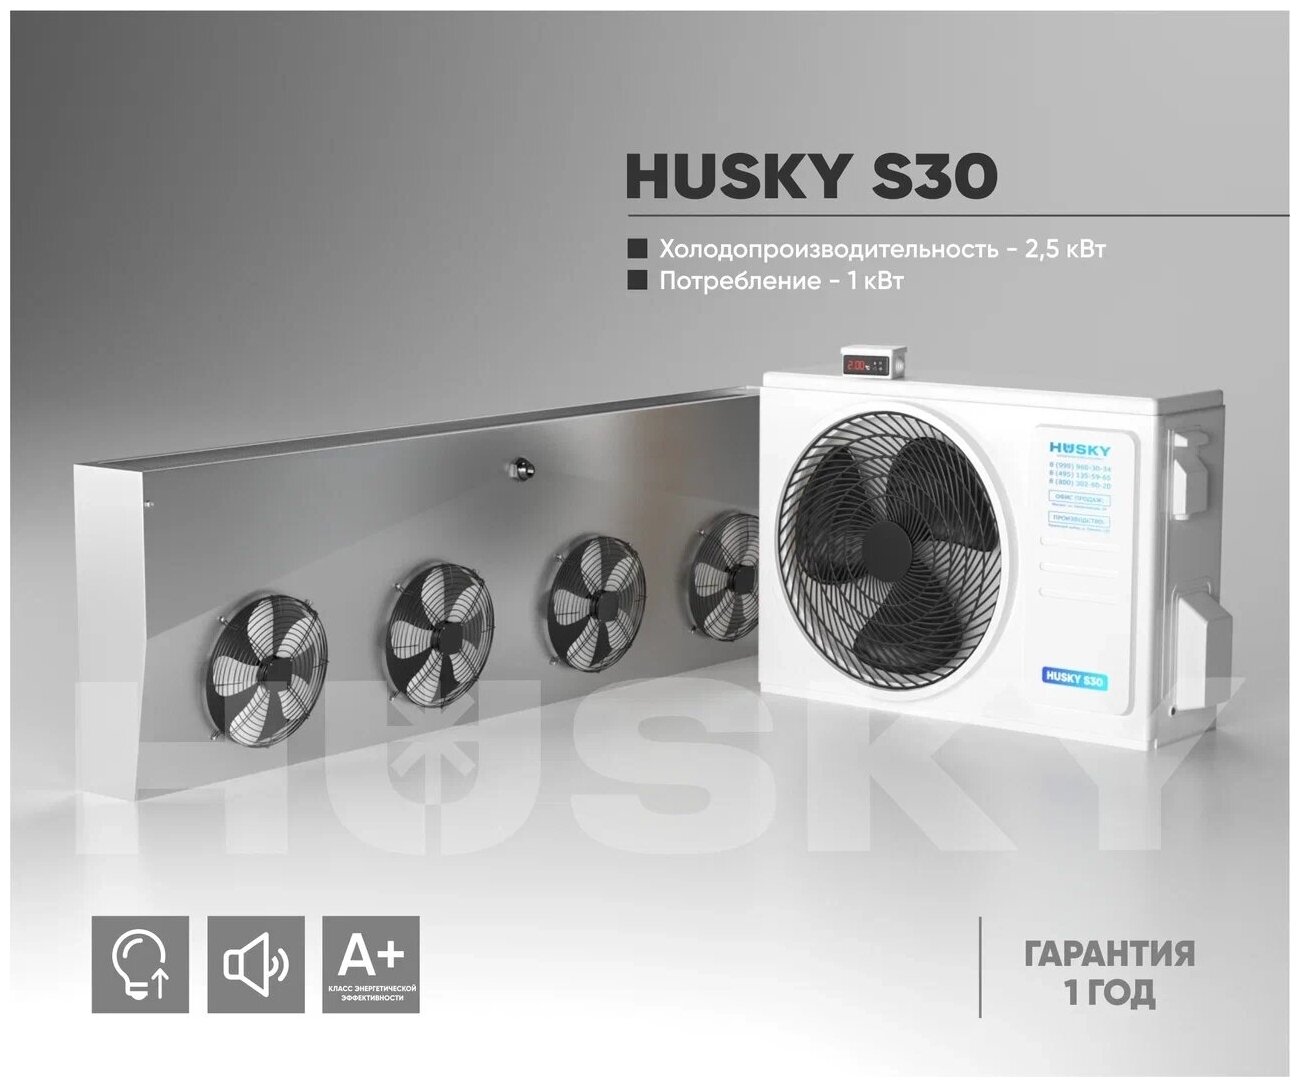 Холодильная установка HUSKY S30